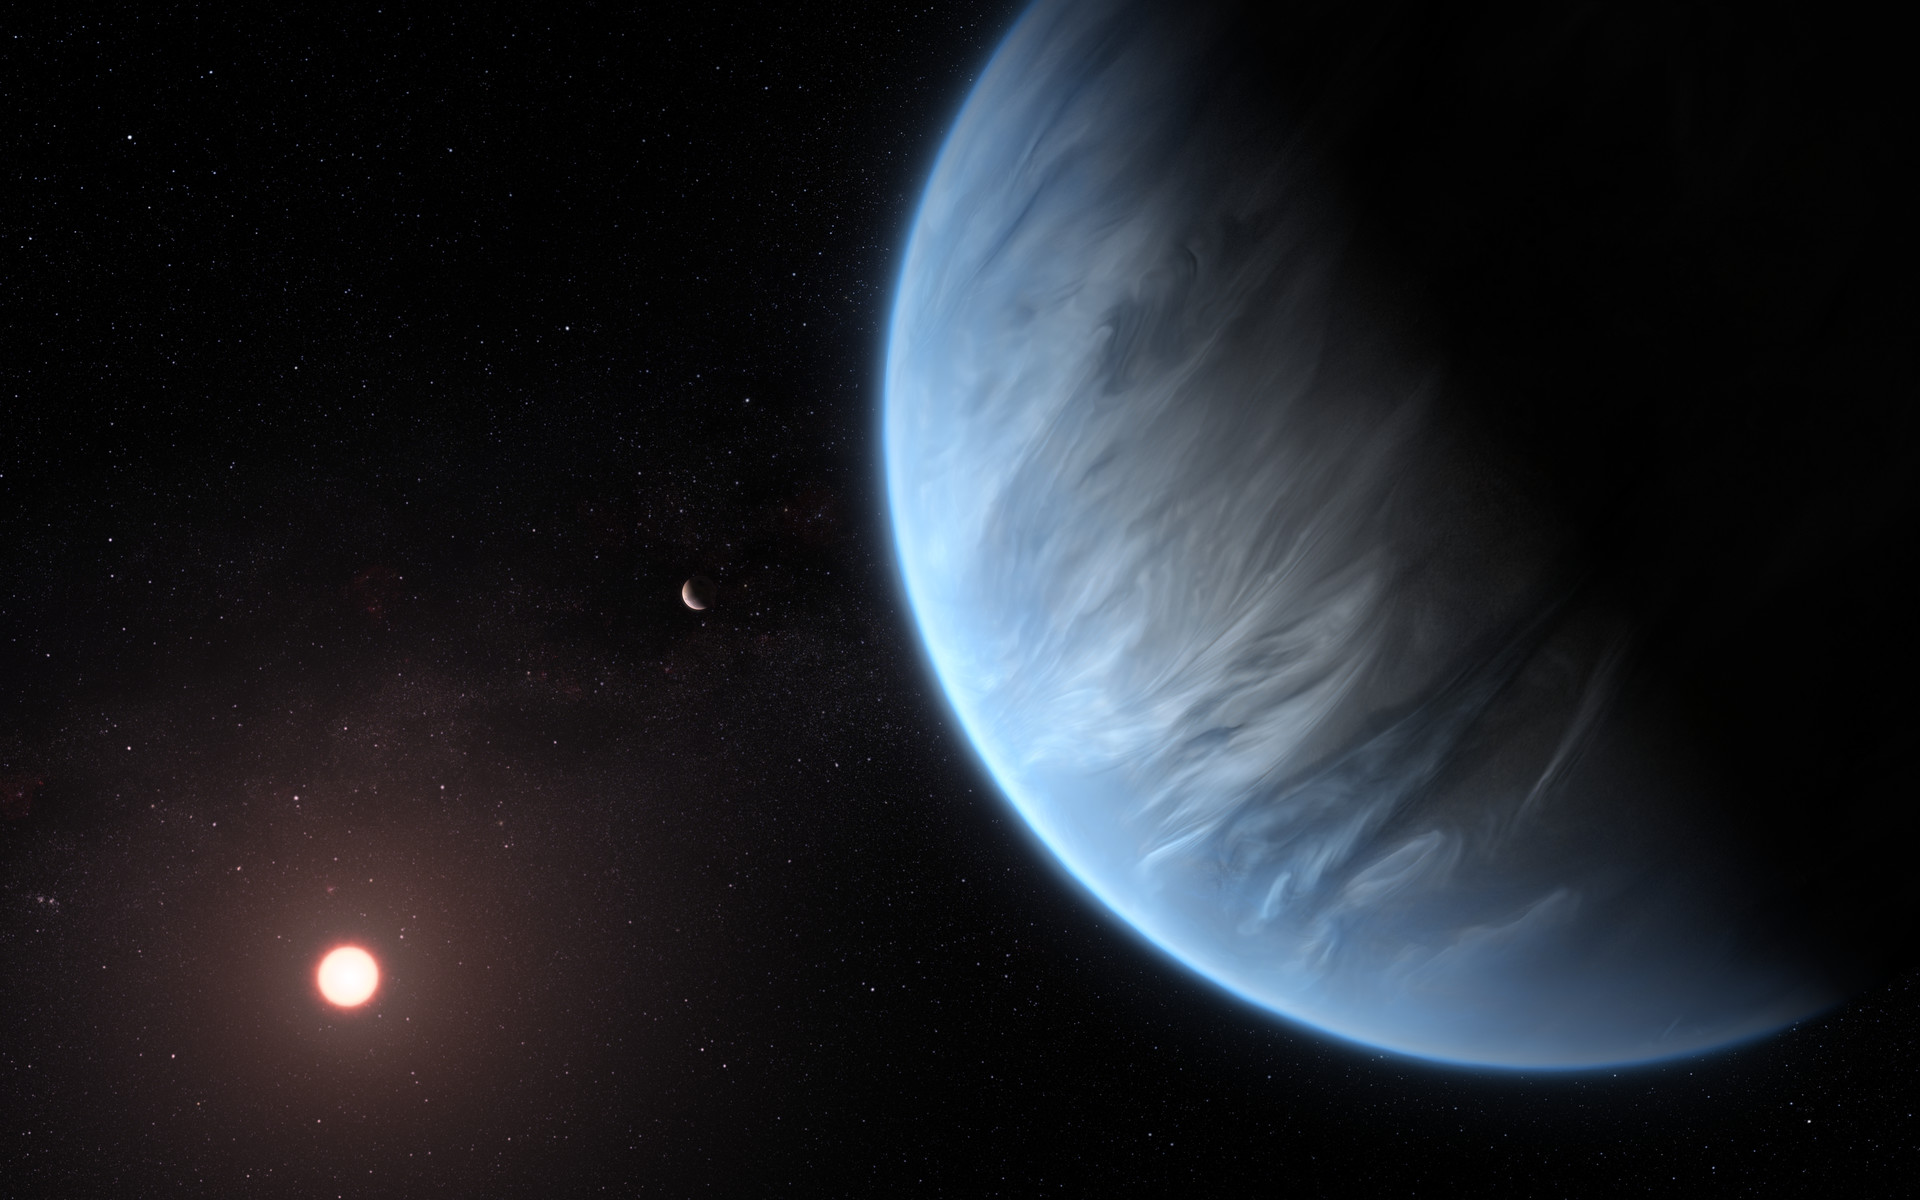 Vue d'artiste de l'exoplanète K2-18b autour de son étoile. © ESA, Hubble Science Team, M. Kornmesser